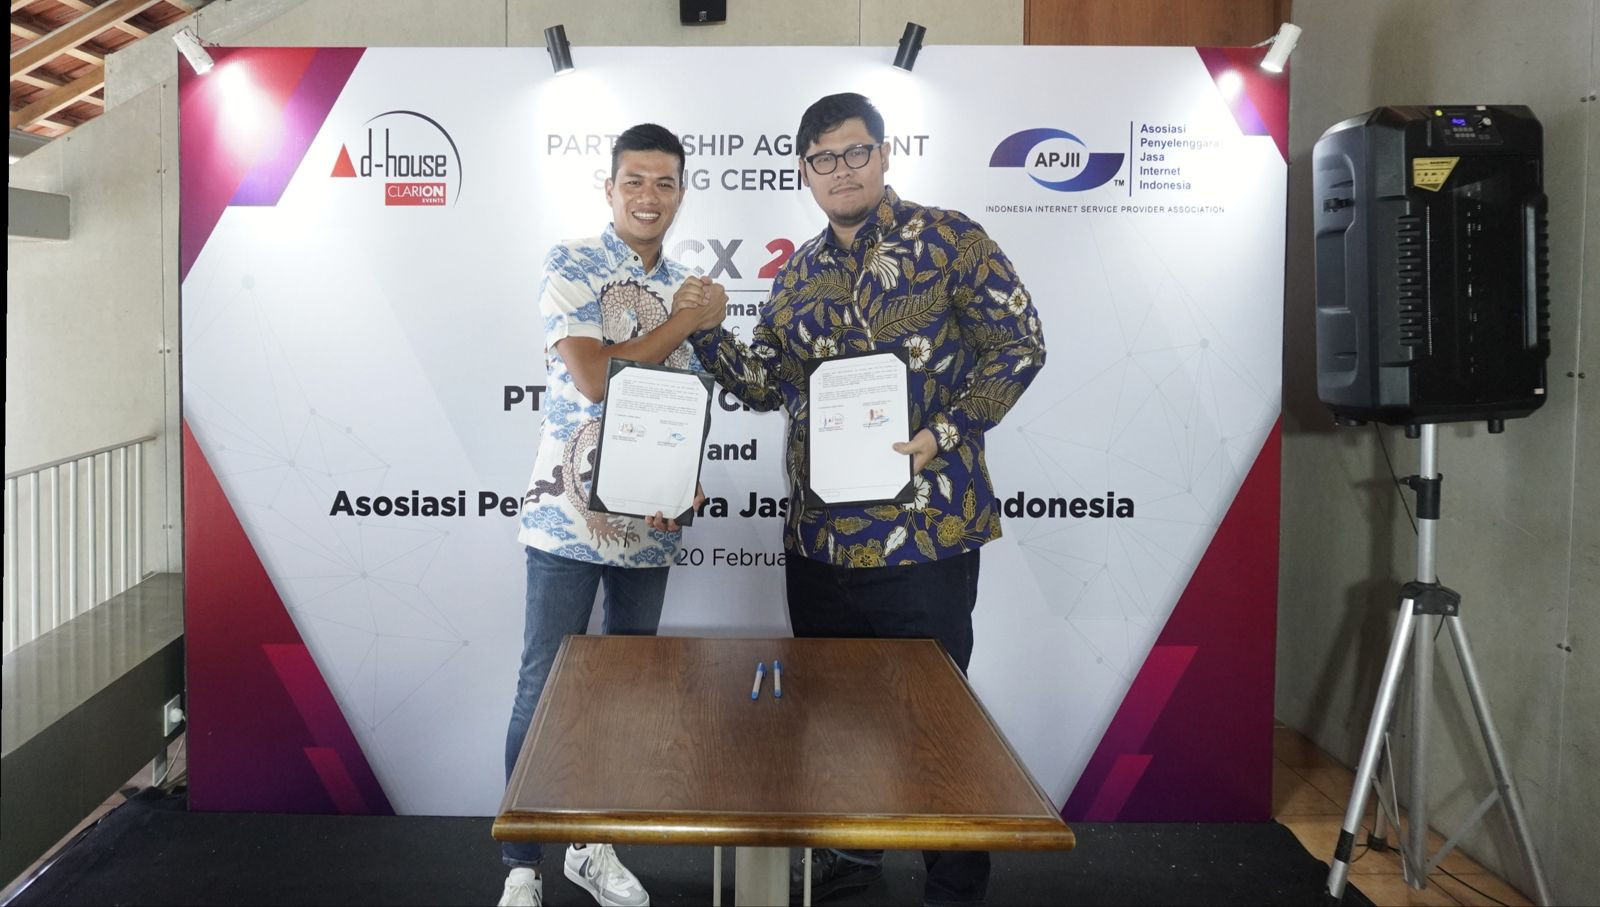 Cara APJII percepat transformasi digital di Indonesia